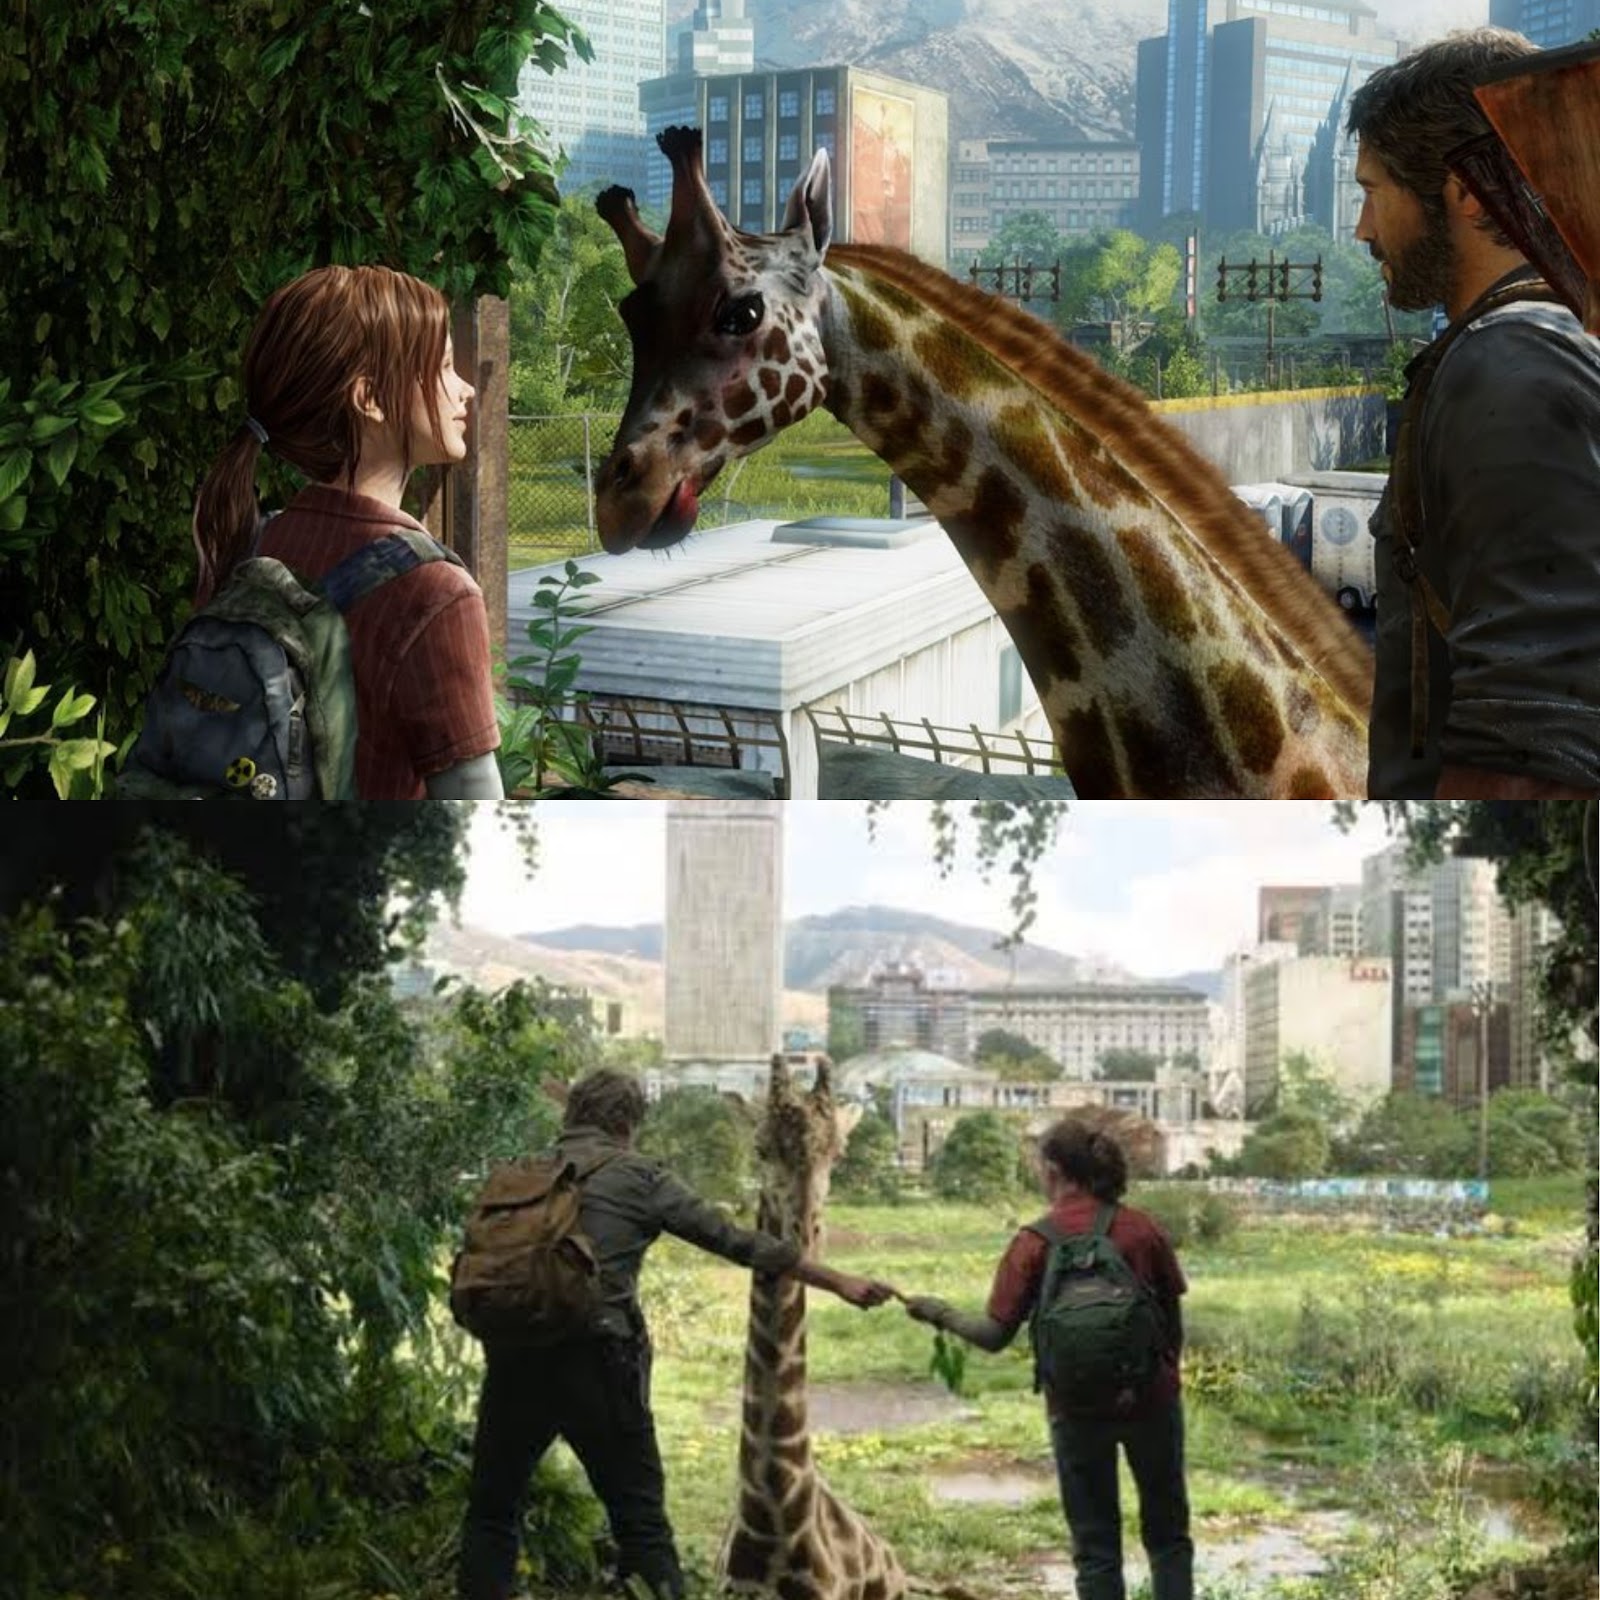 Comparação entre cena no jogo e na série. Fonte Imagem 1: Wikihow | Imagem 2: The Last of Us - HBO Max